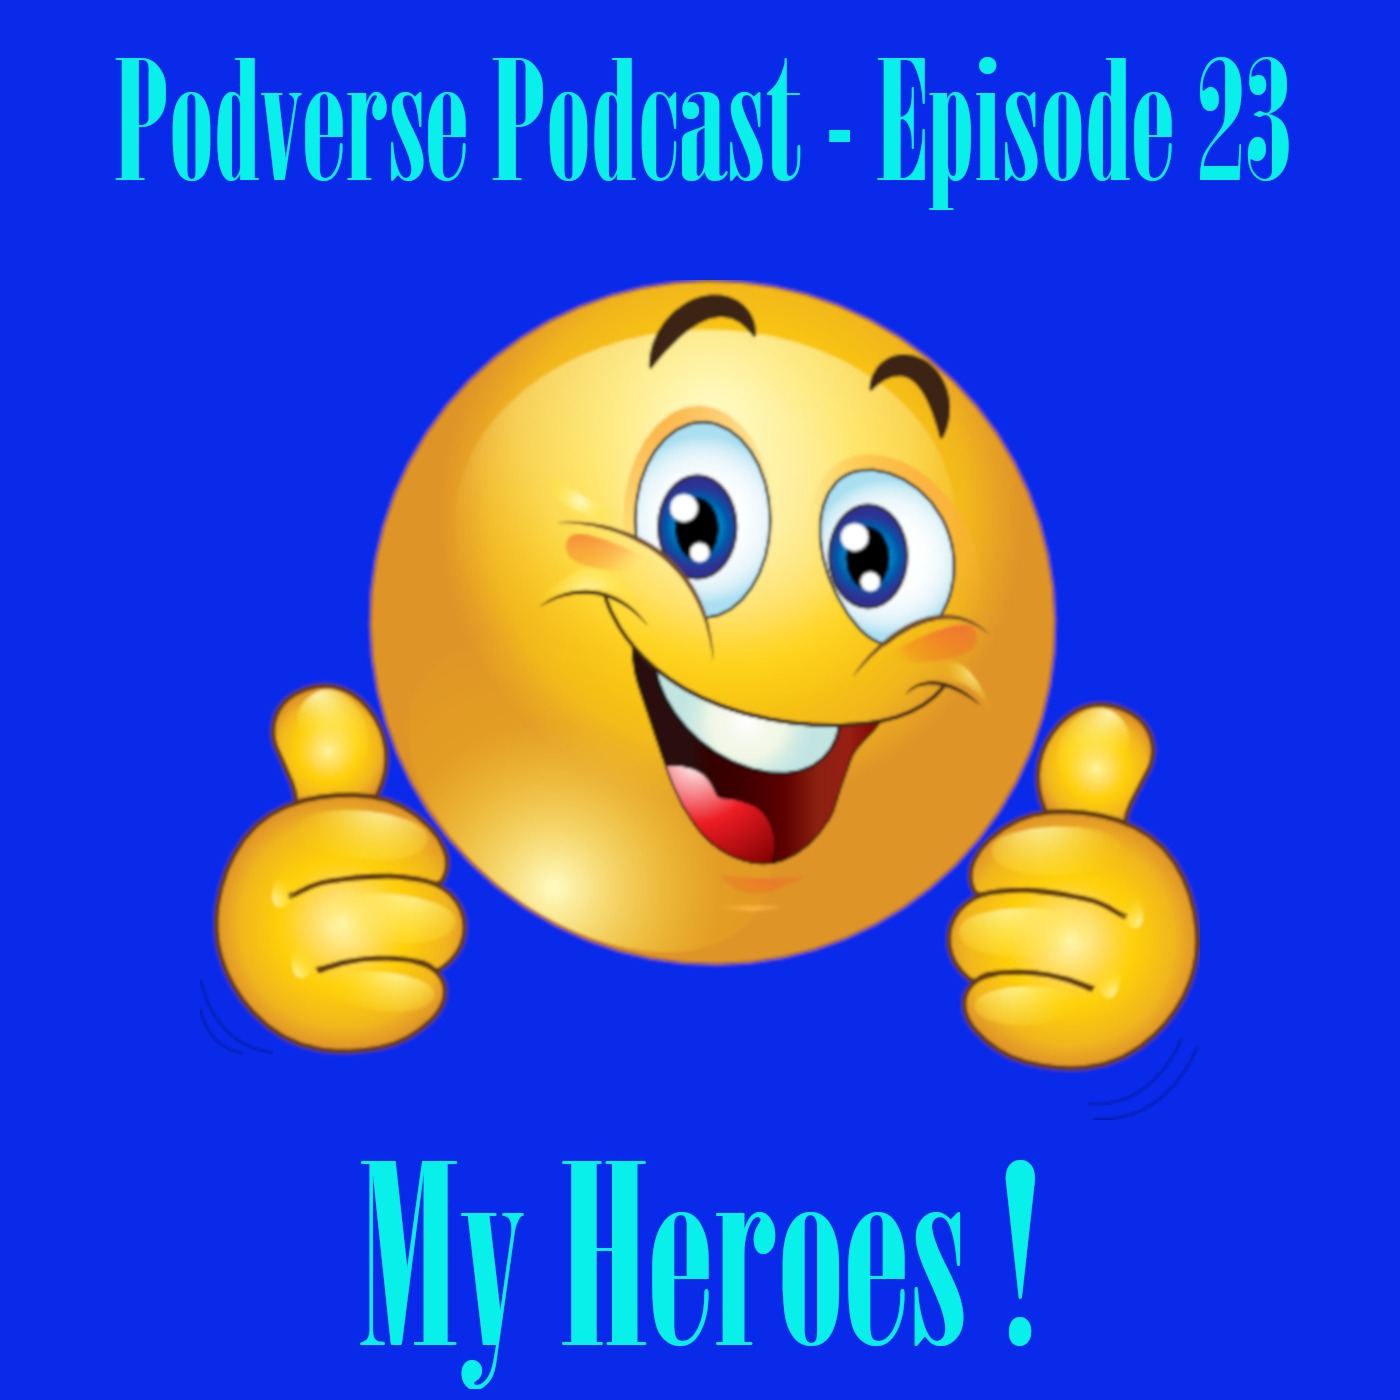 My Heroes! - Episode 23